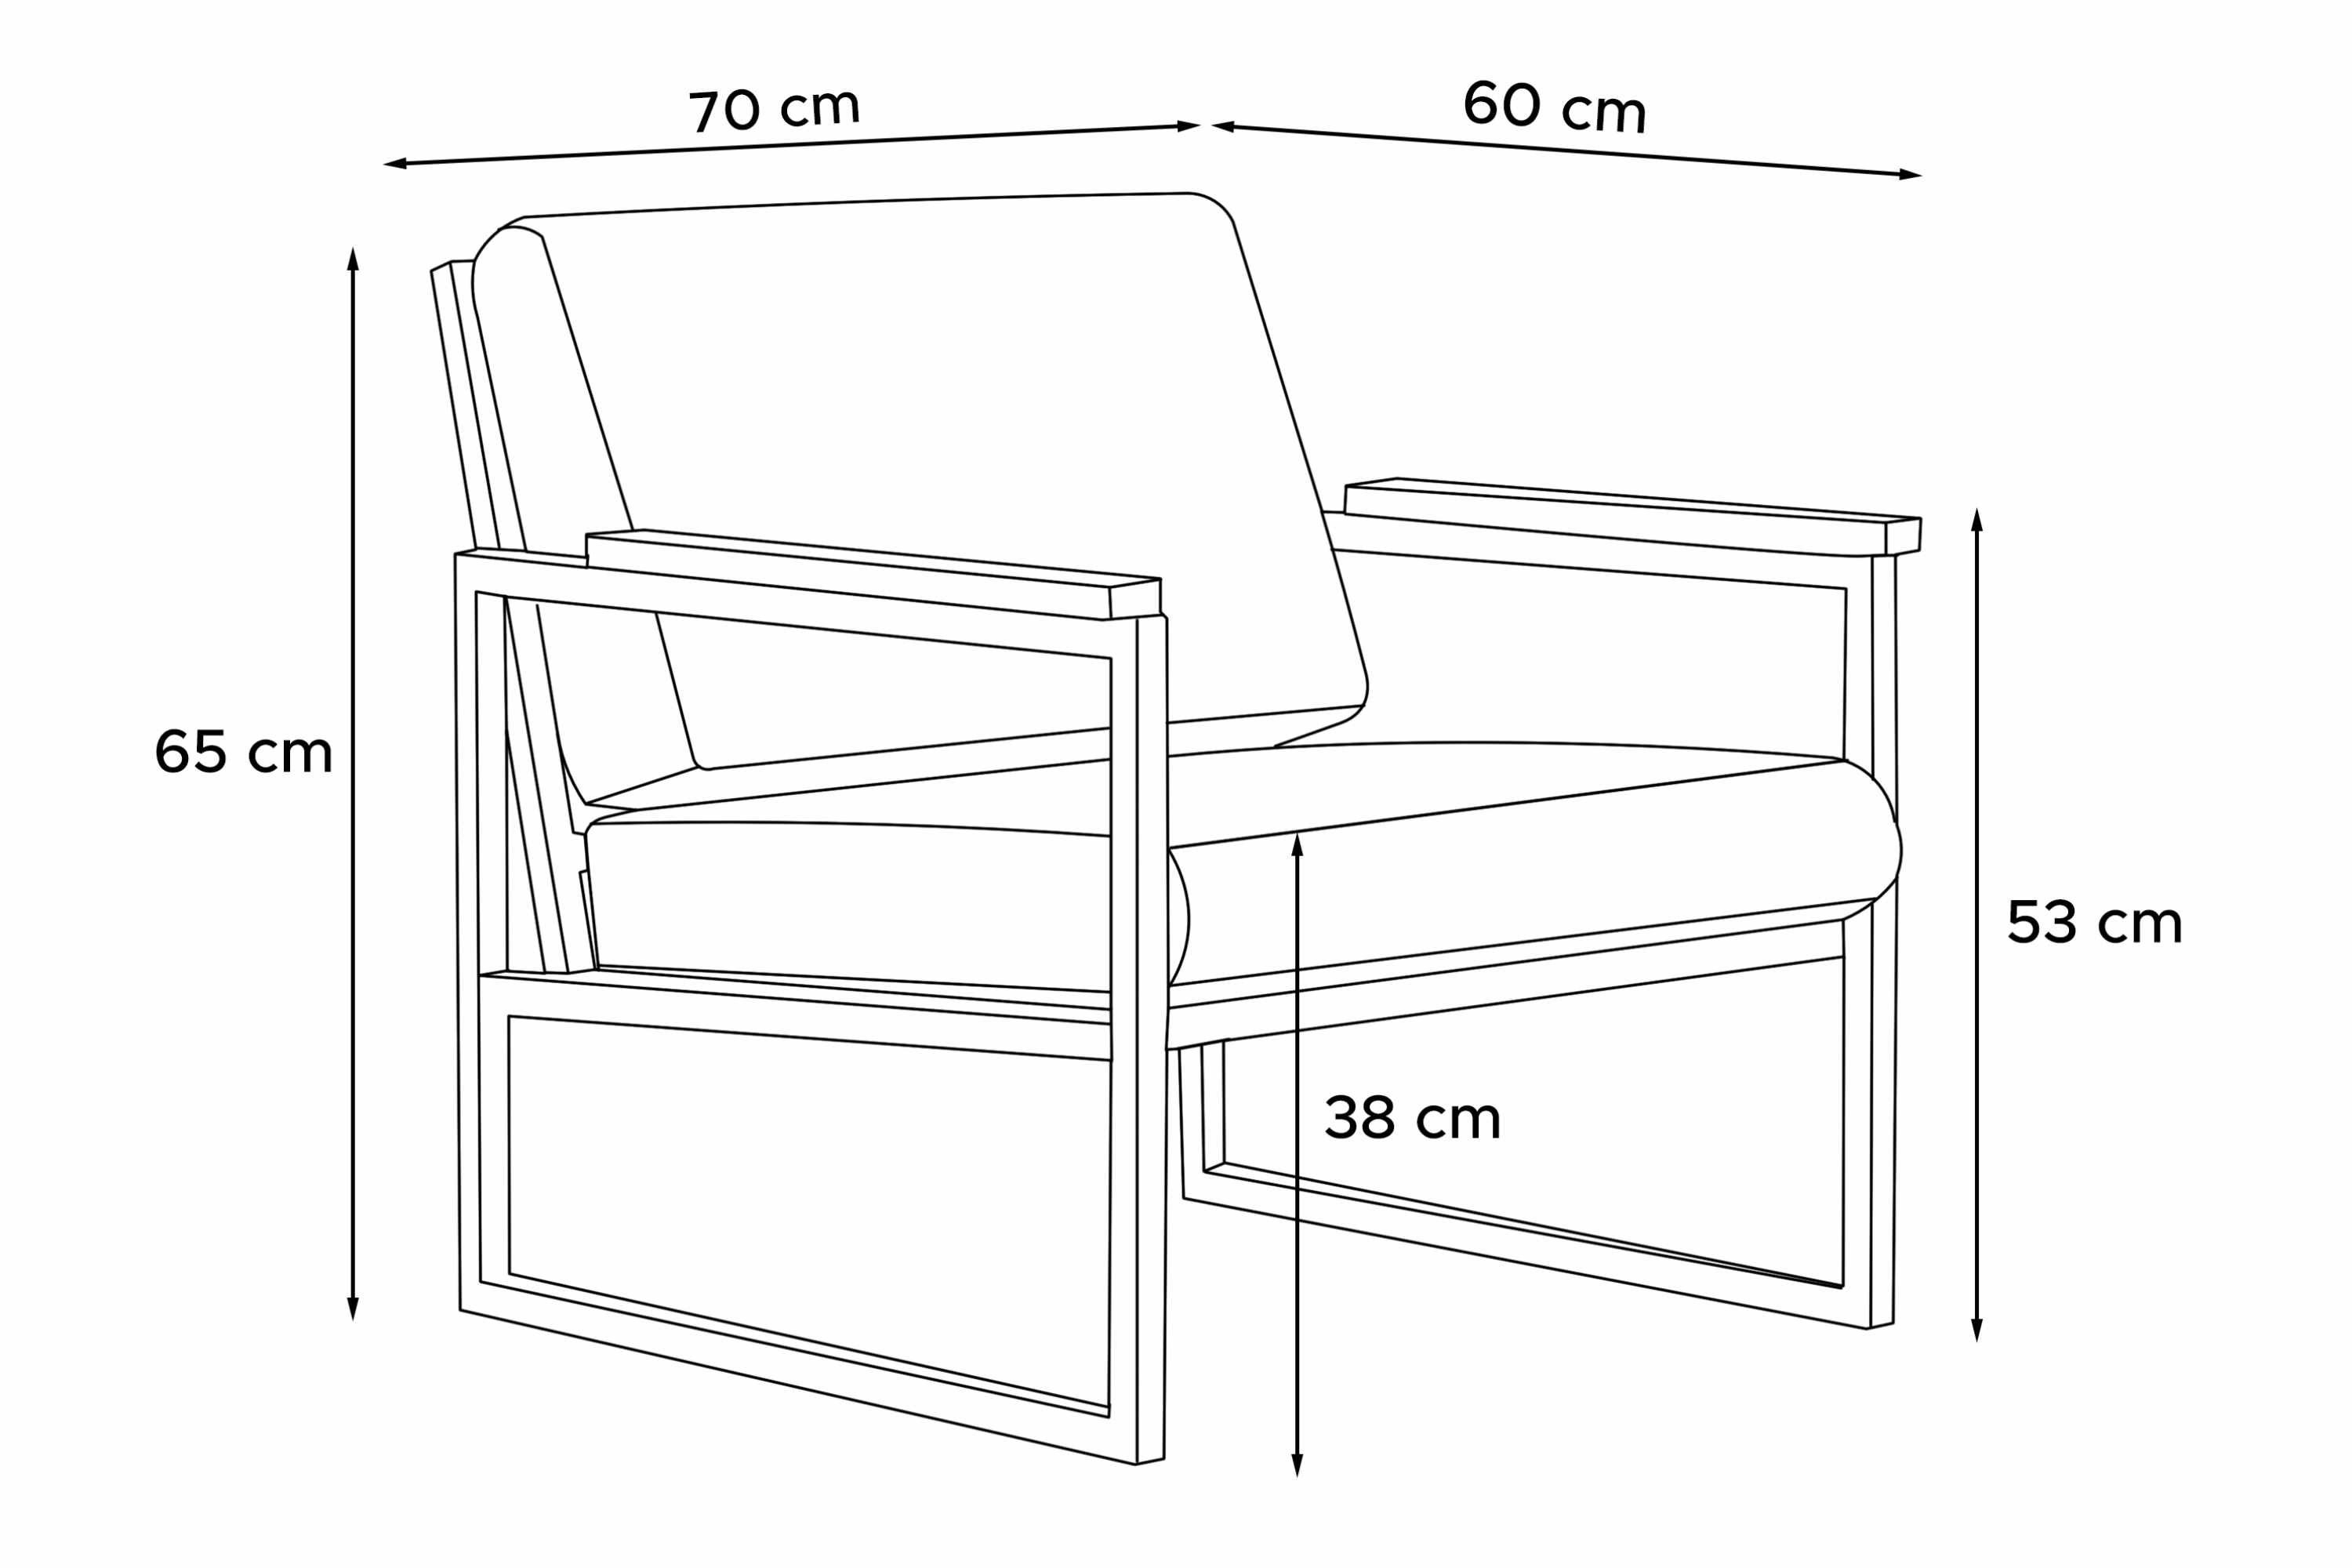 Konsimo Gartensessel TRIBO Europe Sessel), (1x UV-Beständigkeit, geölter schmutz- Made aus Eiche, und anthrazit/beige Handläufe Gartensessel wasserabweisend, in